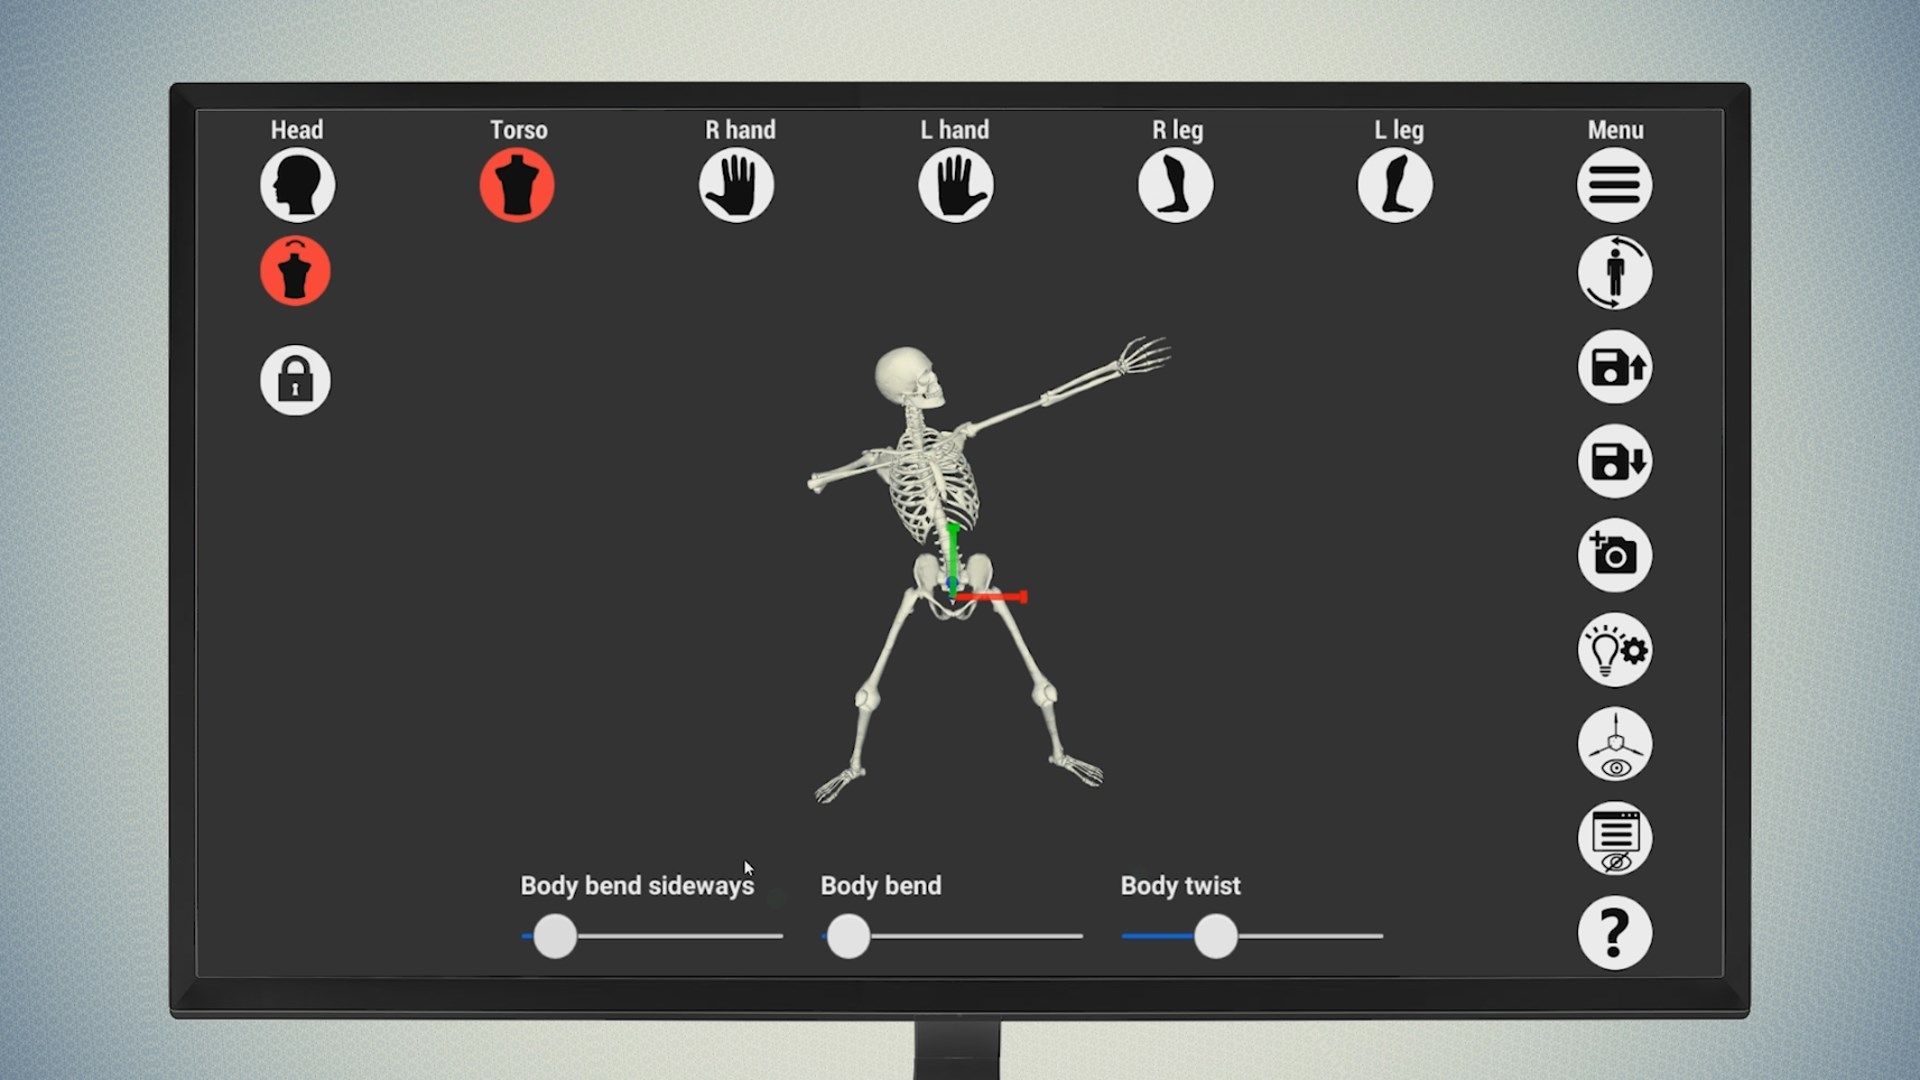 Bone Poser - 3D skeleton pose tool